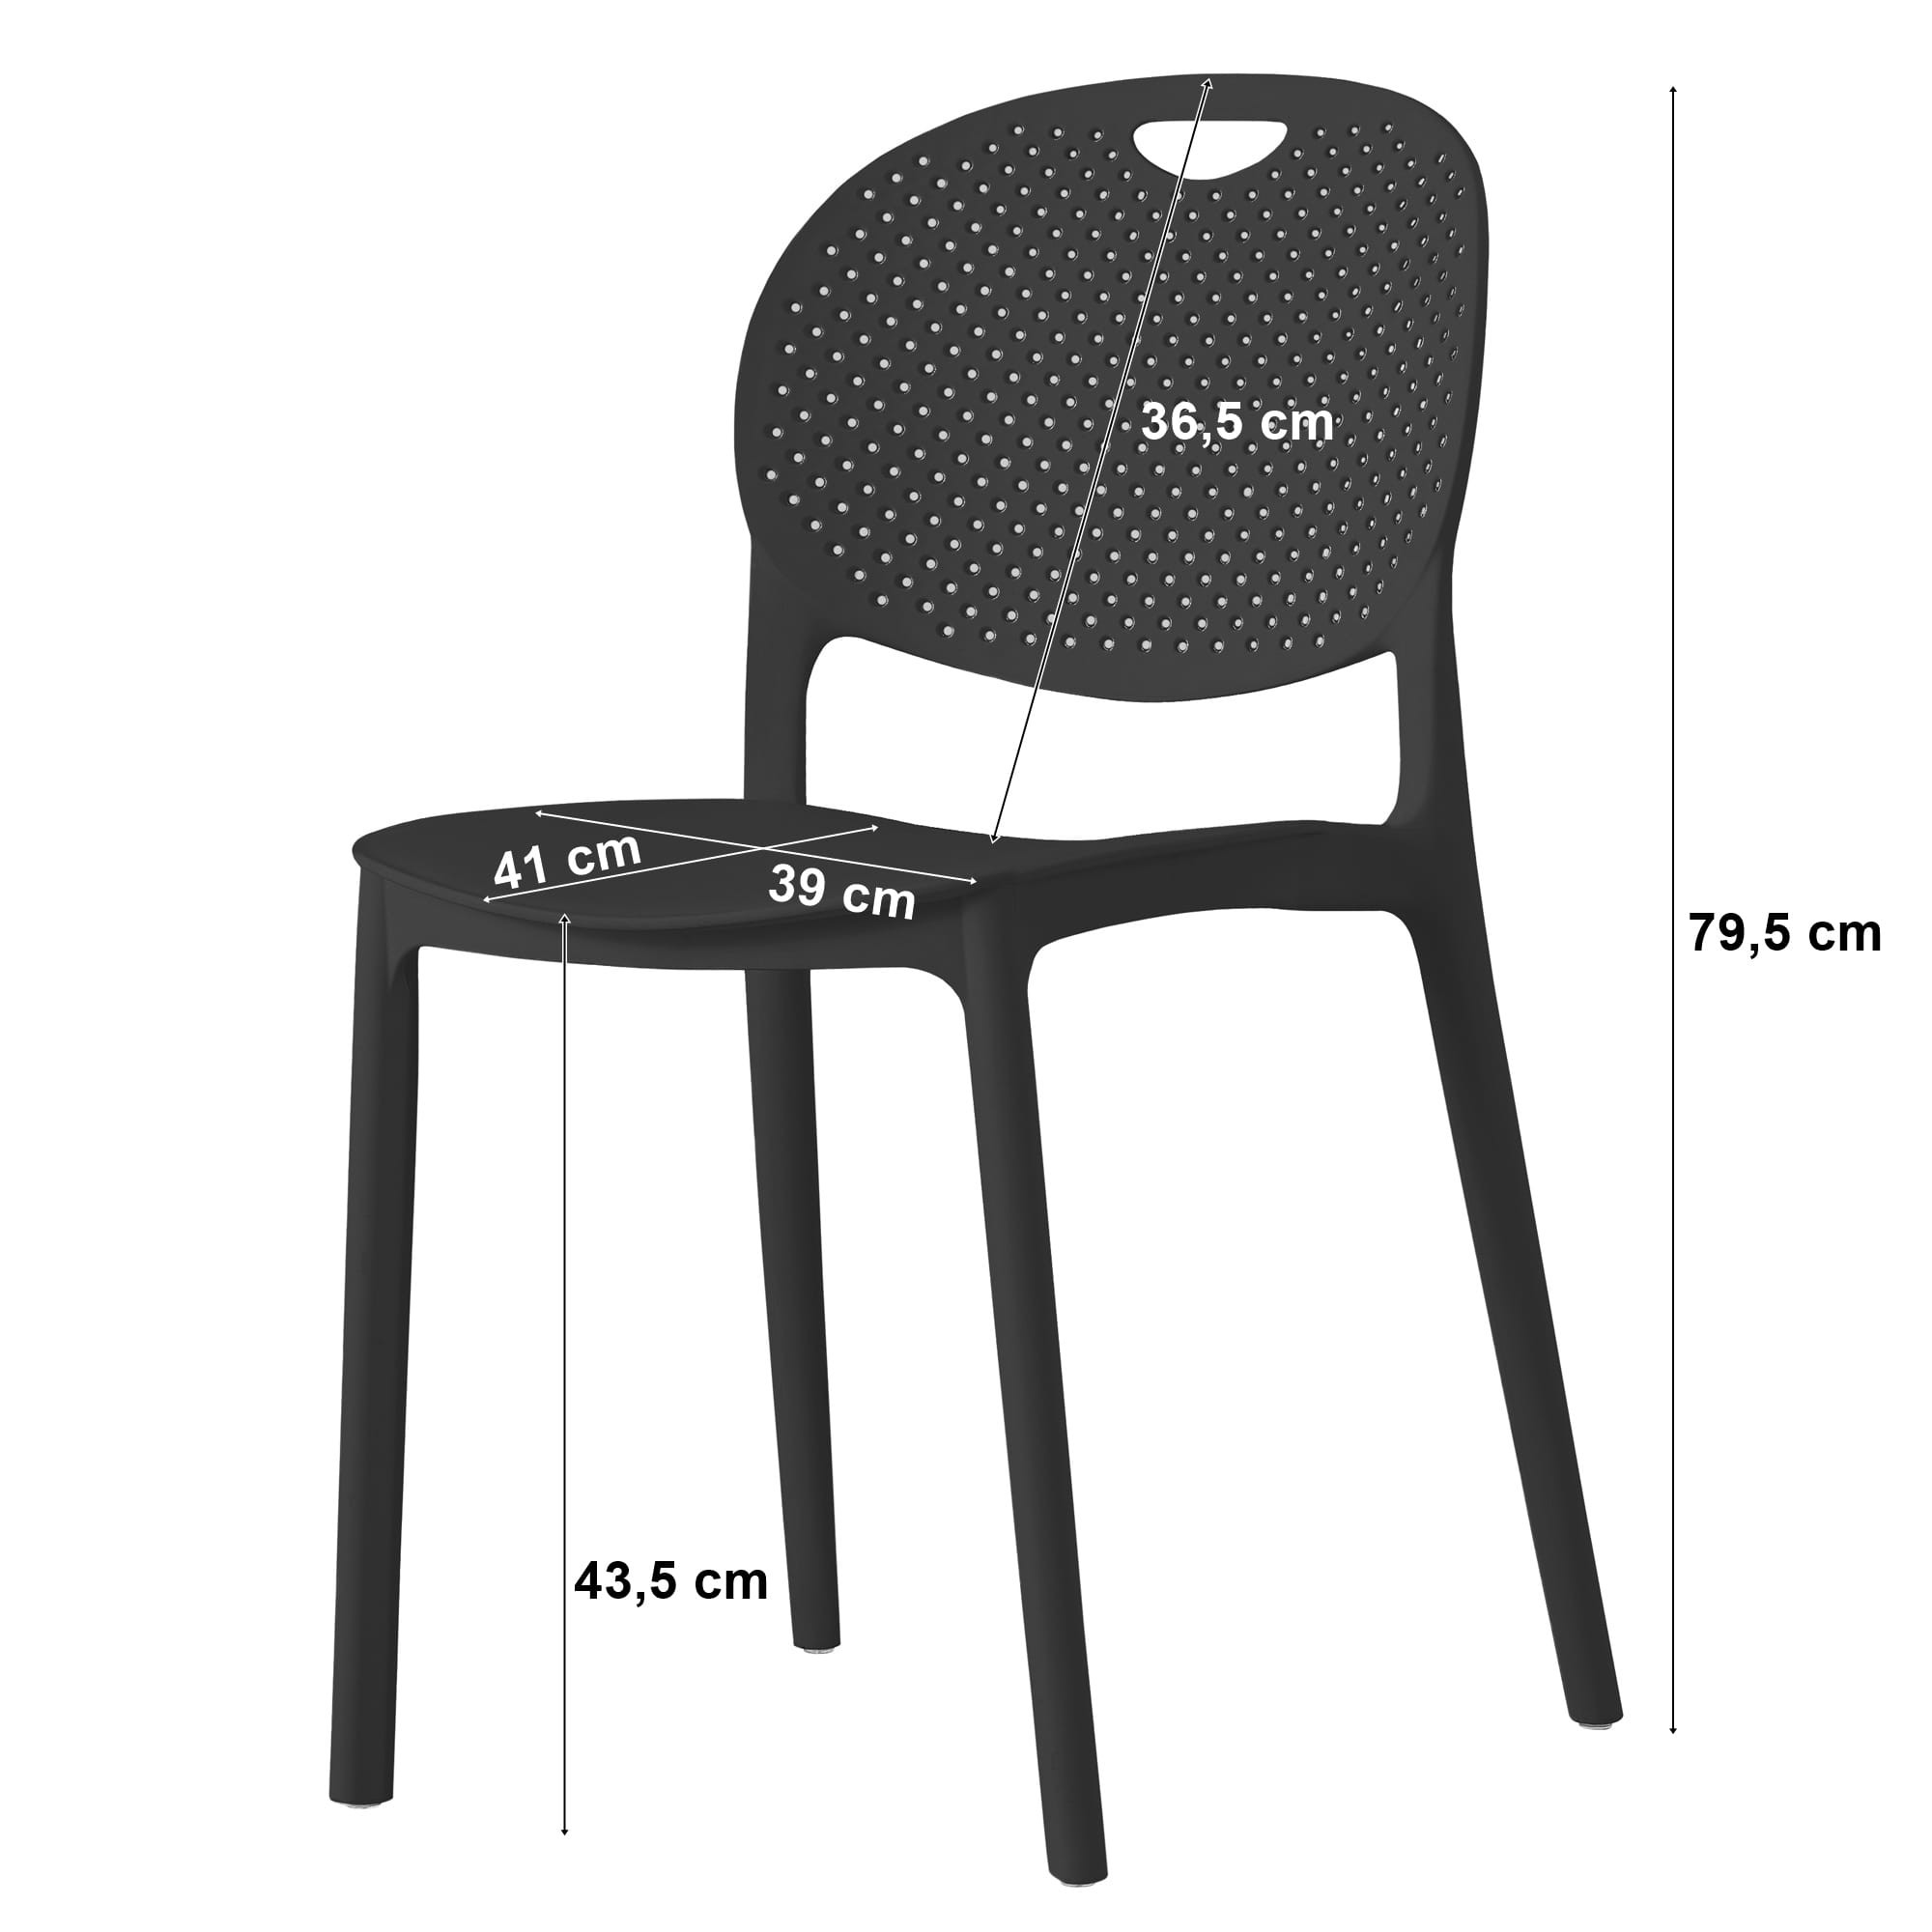 Set tří židlí LUMA bílé (3ks)